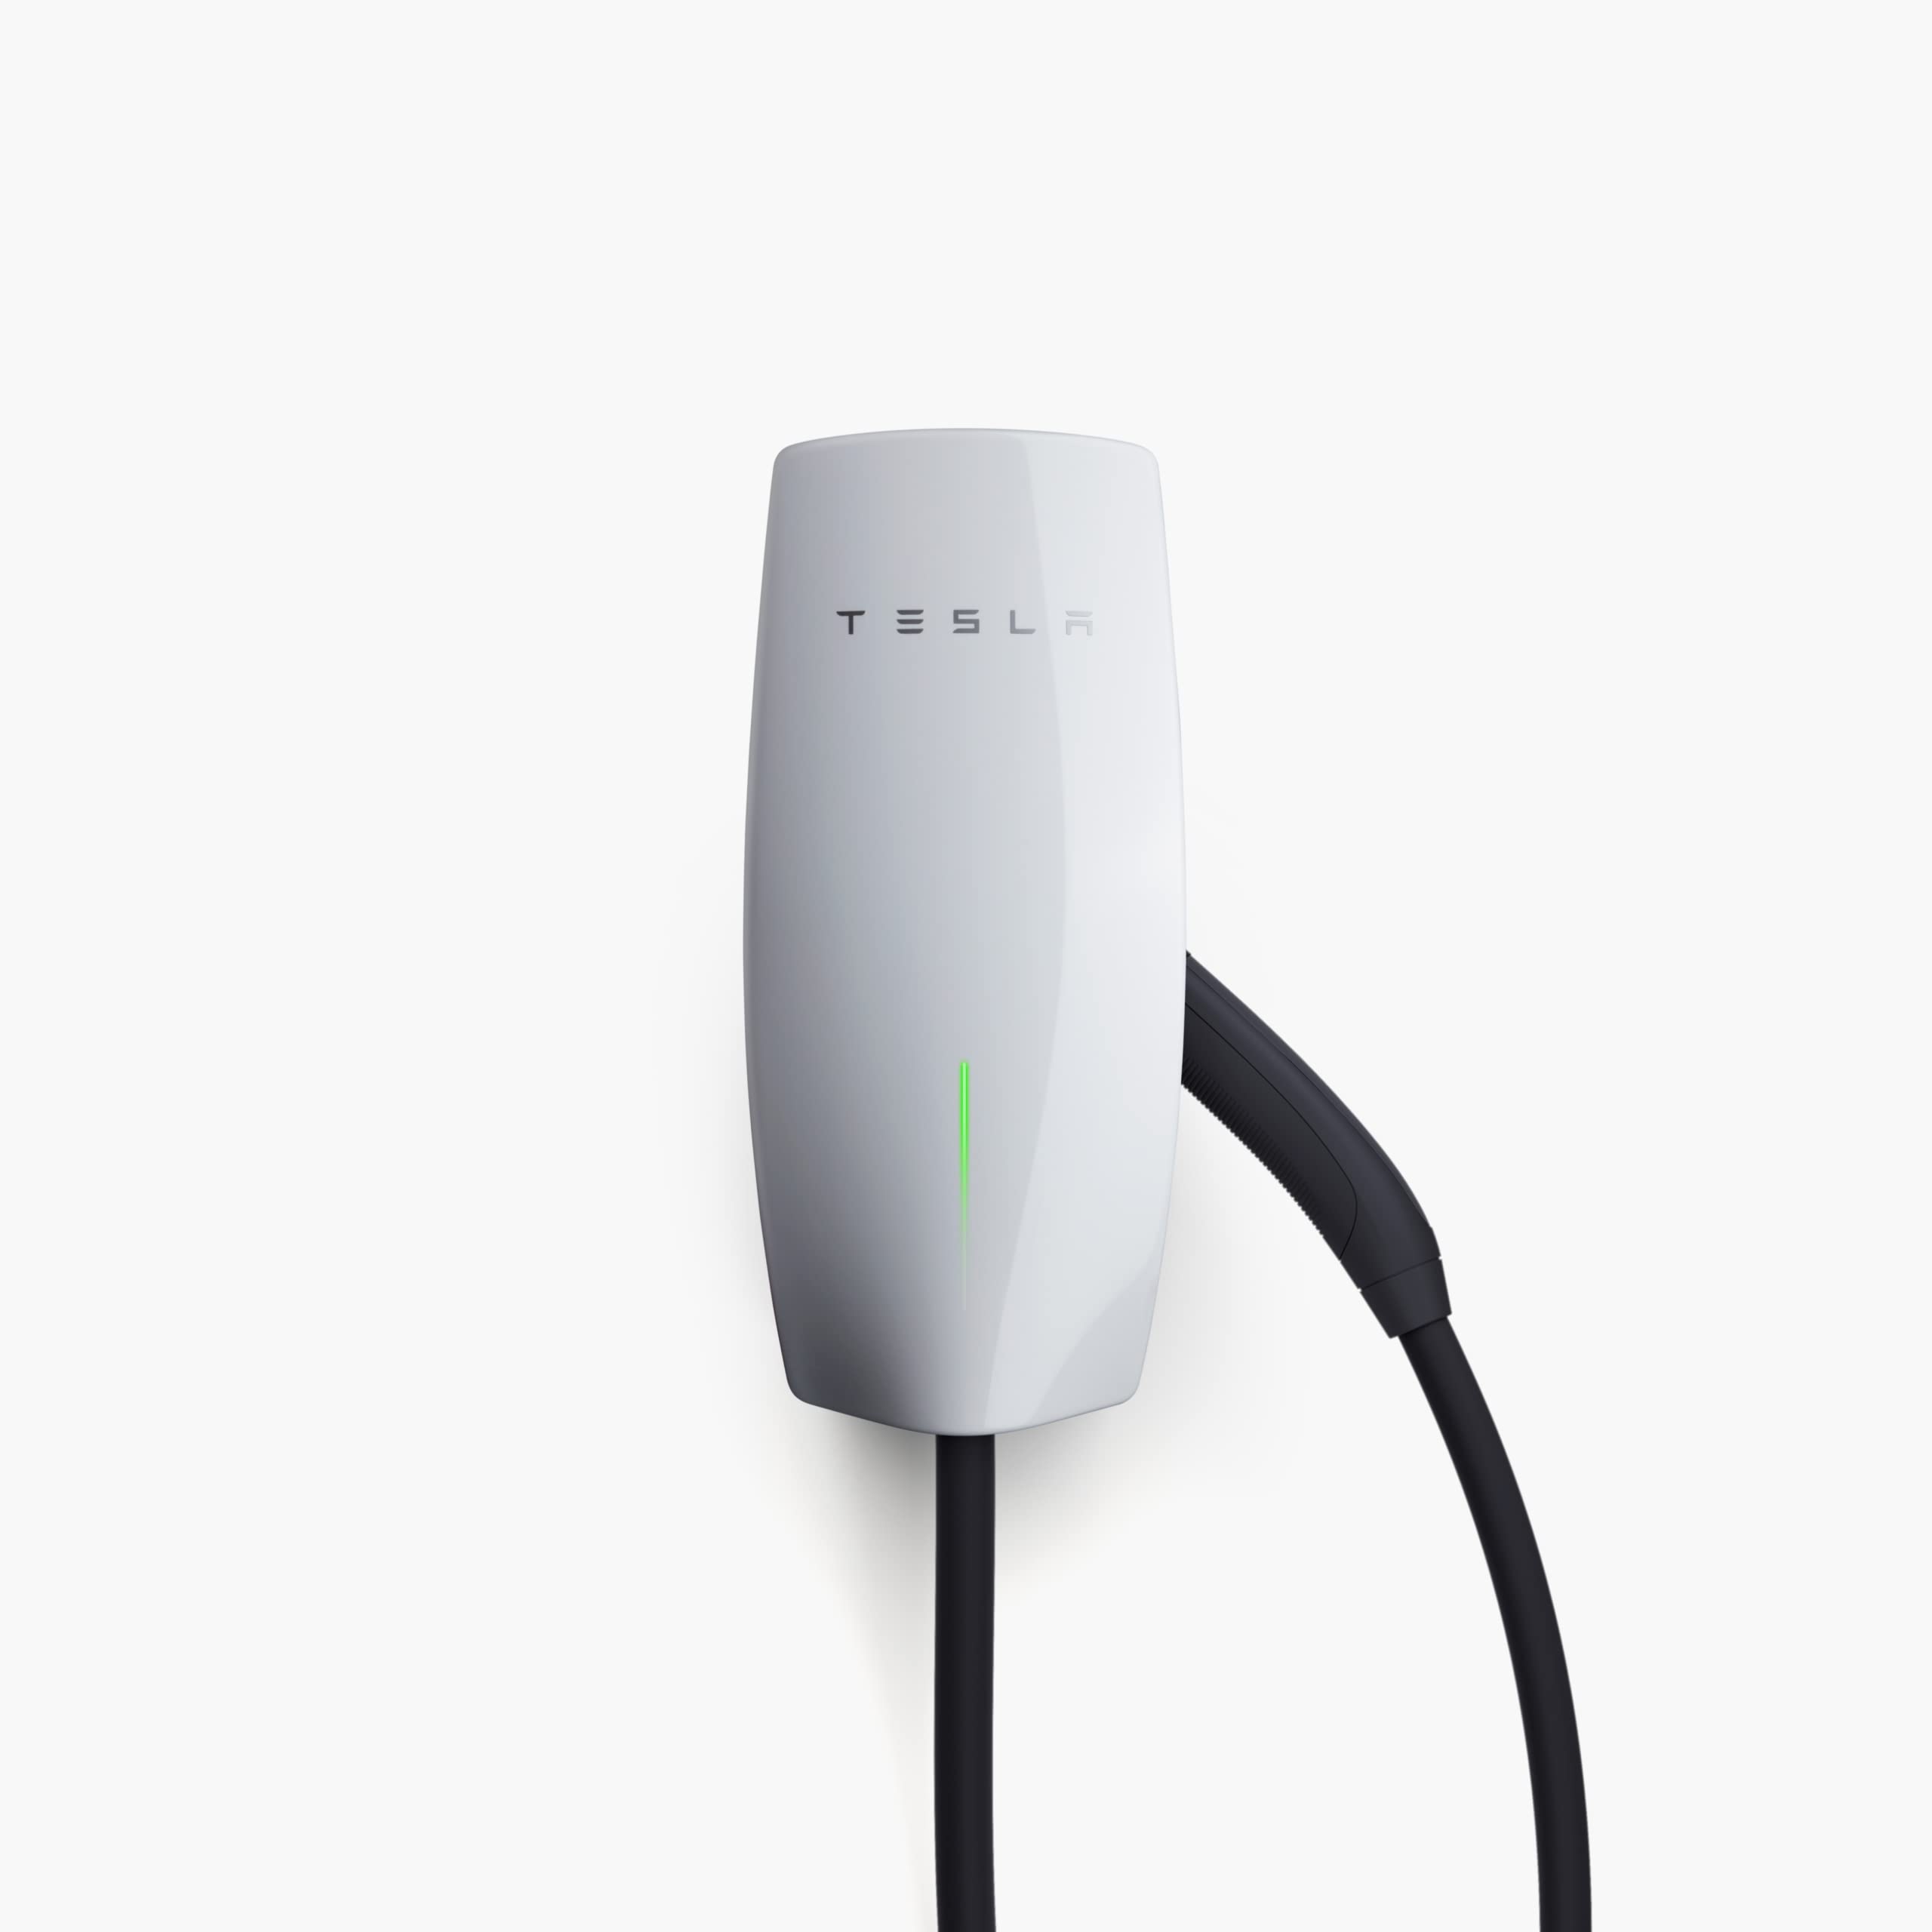 Tesla वॉल कनेक्टर - इलेक्ट्रिक वाहन (ईवी) चार्जर - लेवल 2 - 24' केबल के साथ 48ए तक